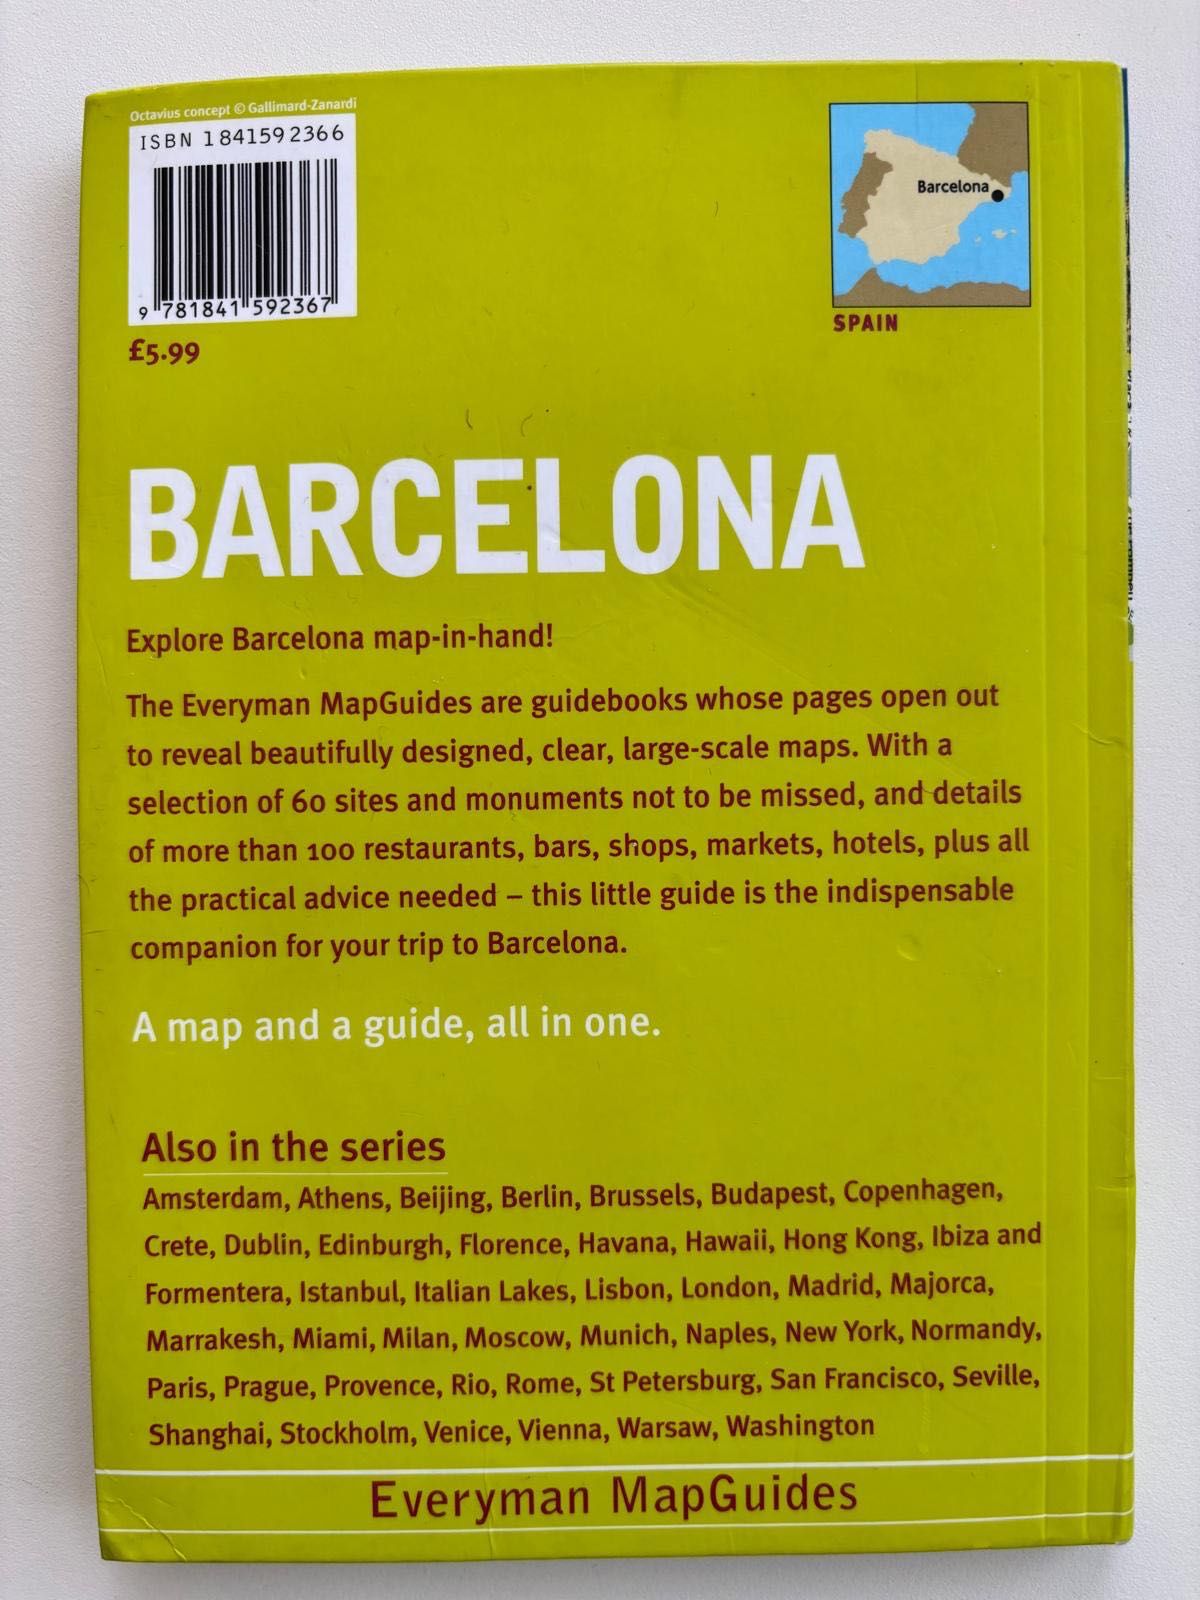 BARCELONA przewodnik turystyczny z mapami, wersja językowa angielska